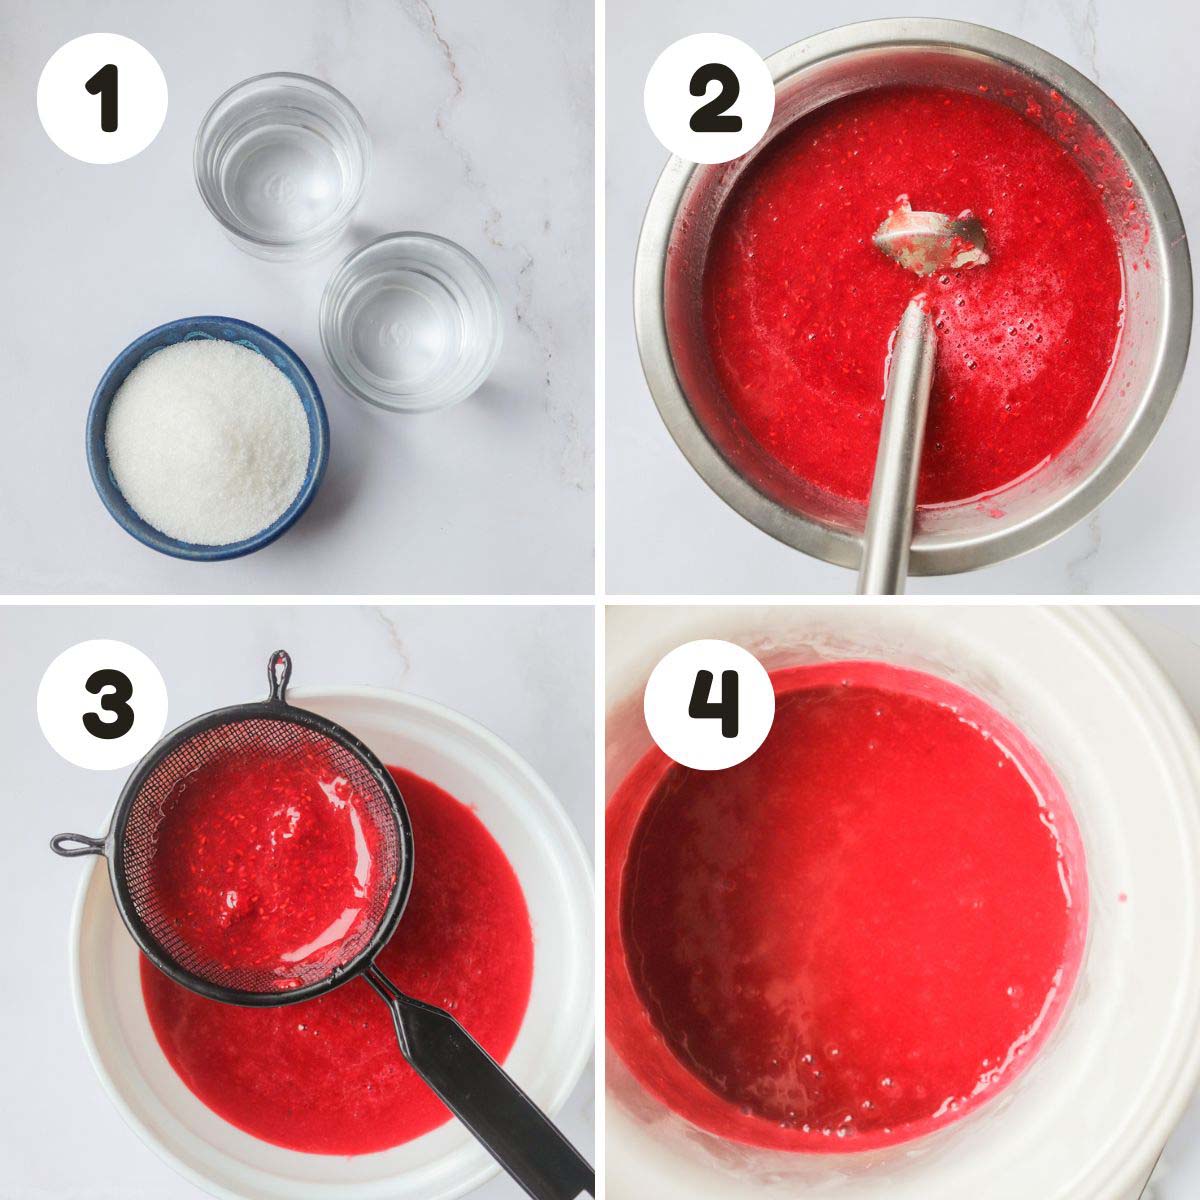 Steps to make the raspberry sorbet.